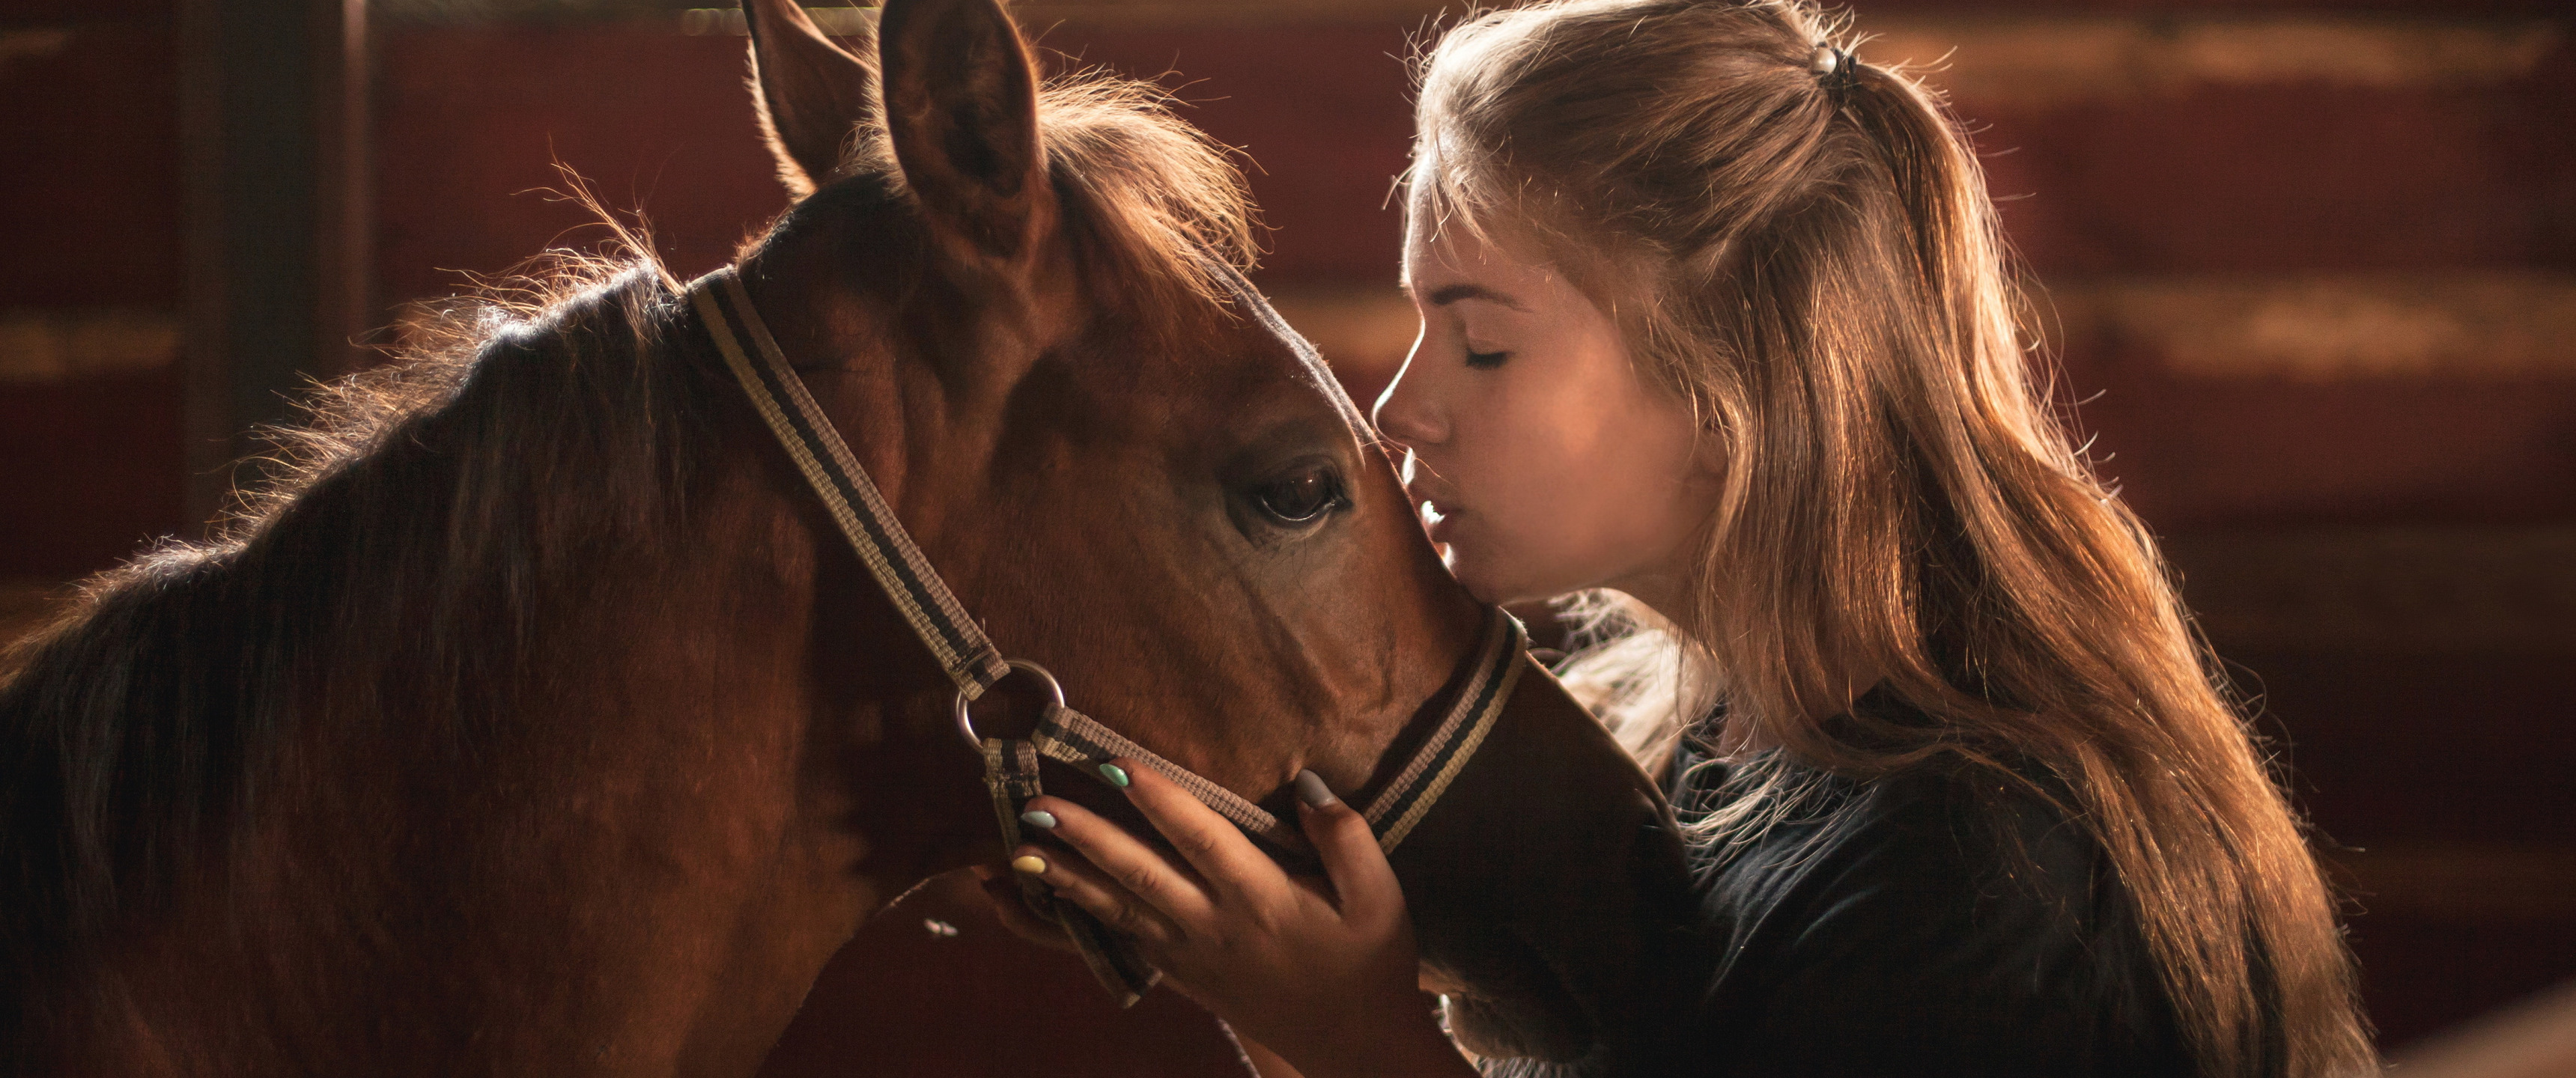 Девушка лошадь клип. Девушка с лошадью. Обои на рабочий стол девушки на лошадях.